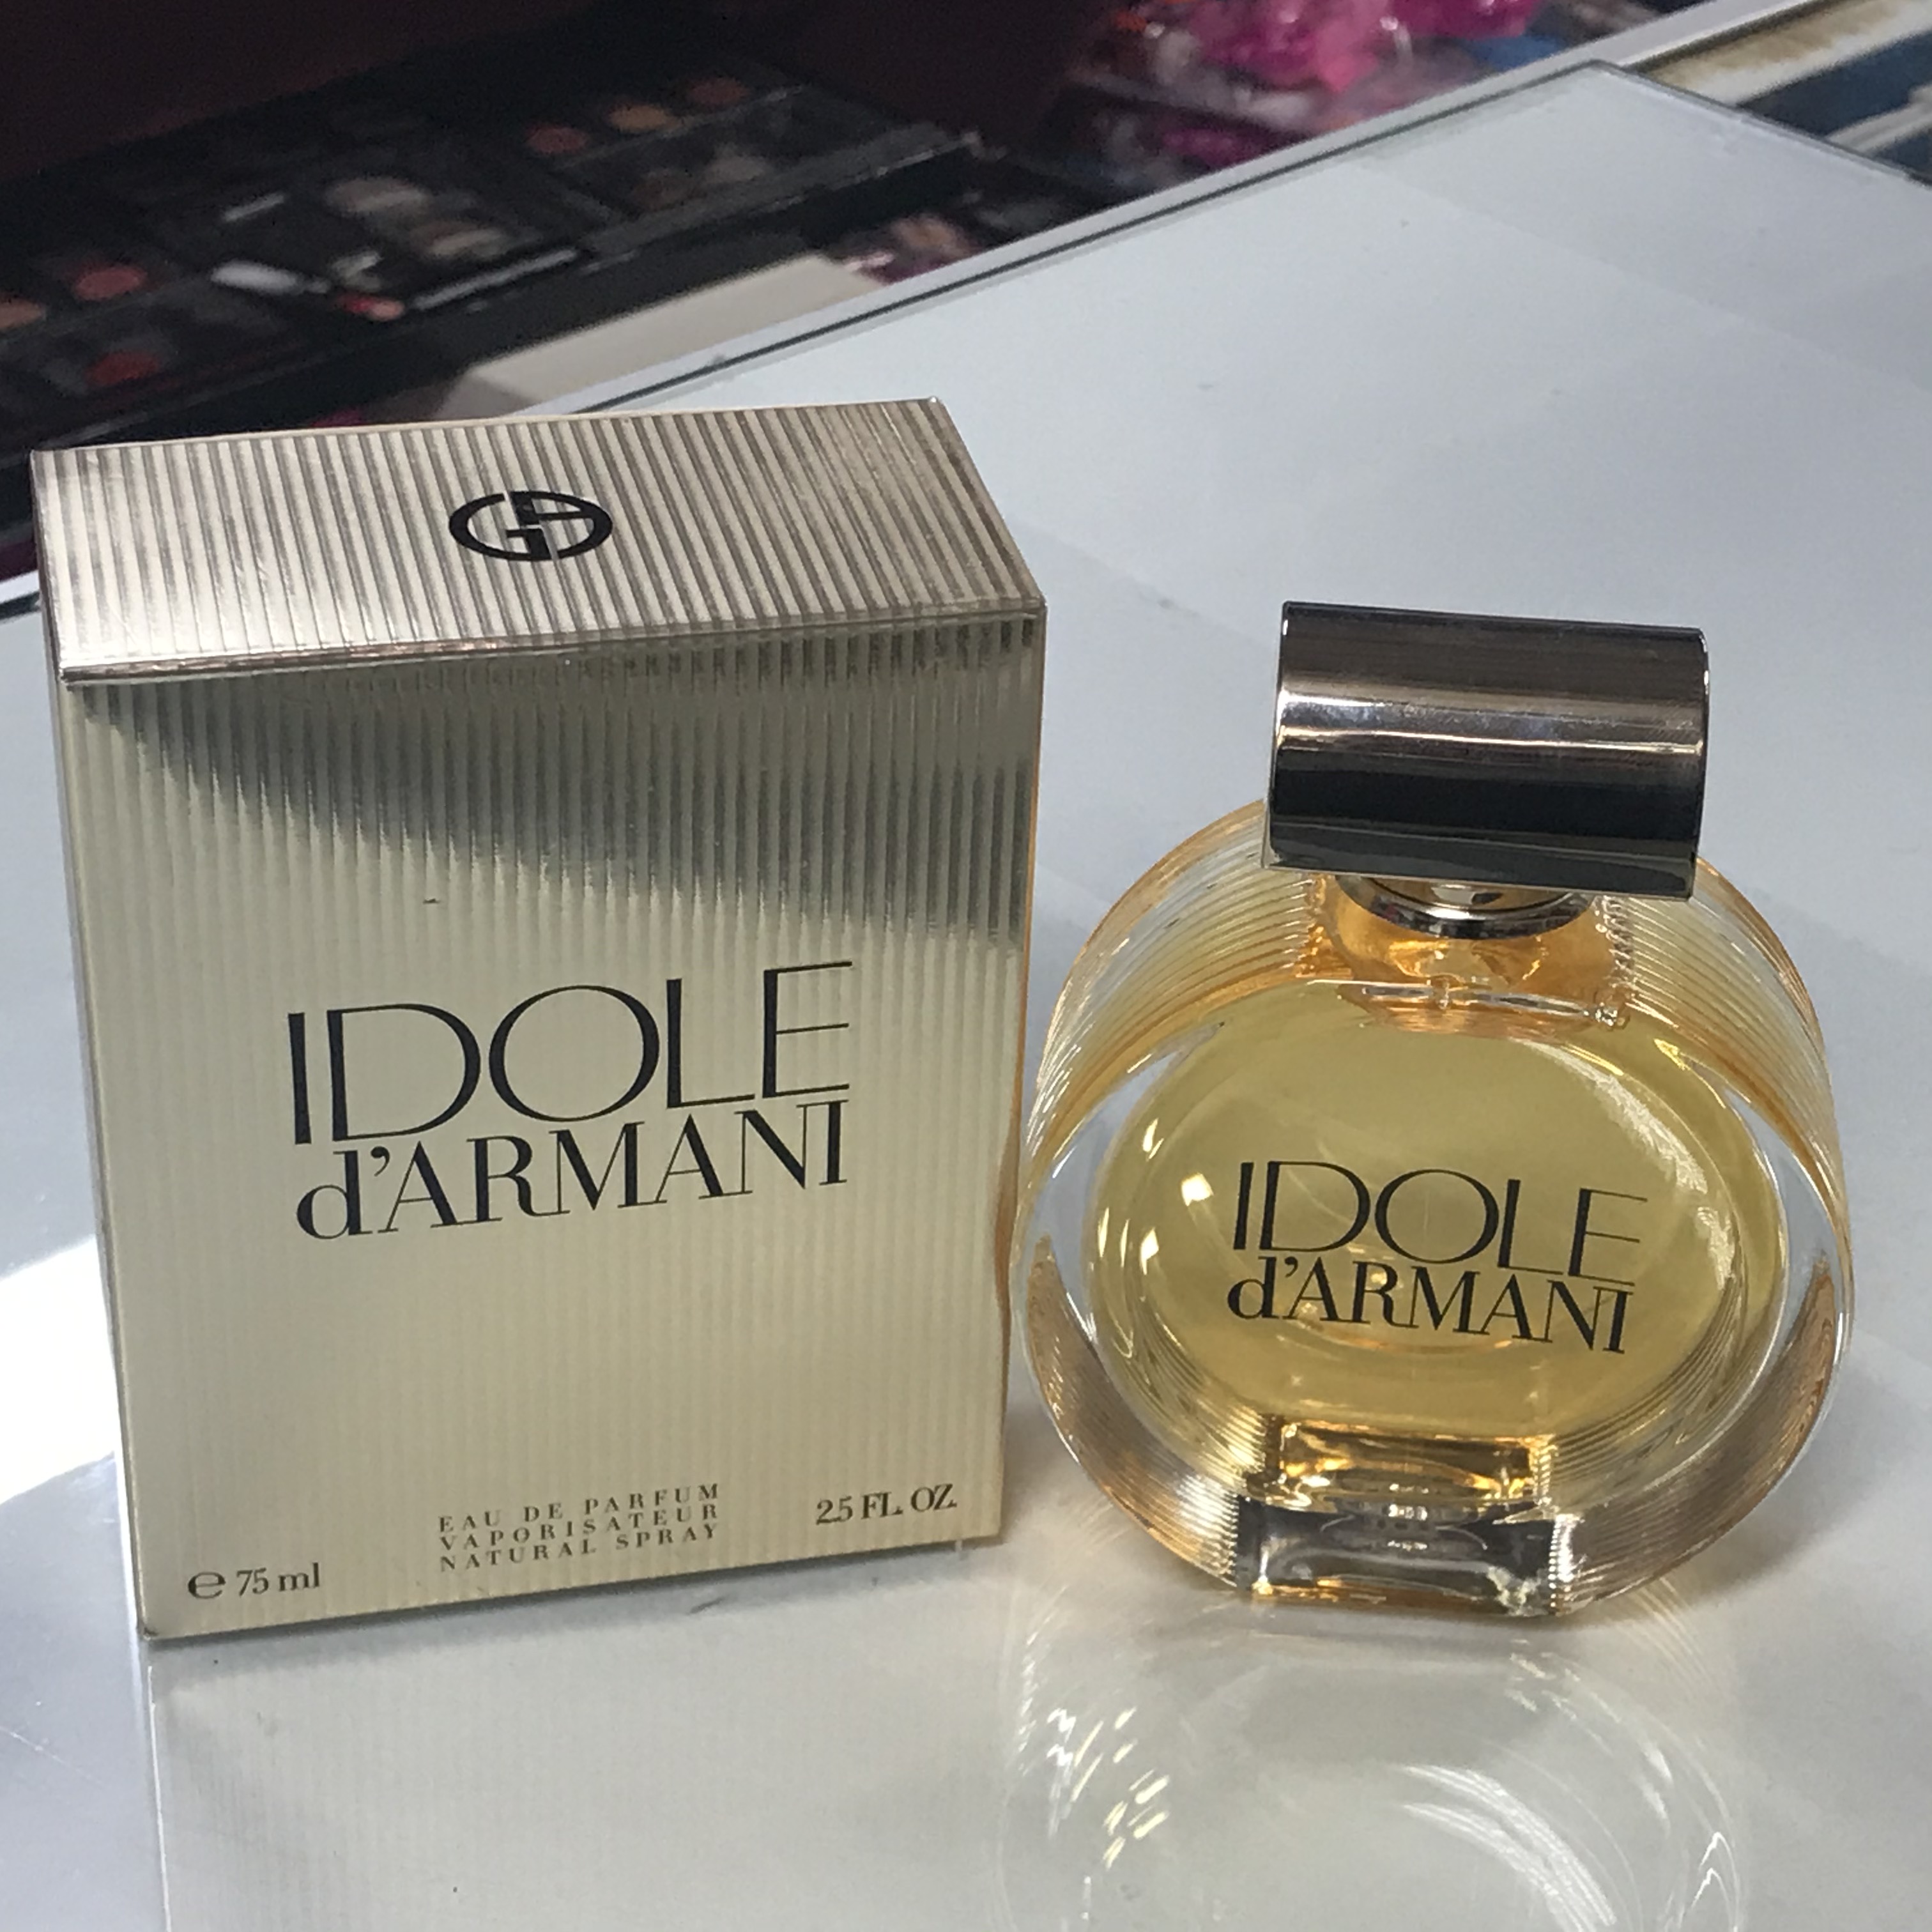 idole parfum armani